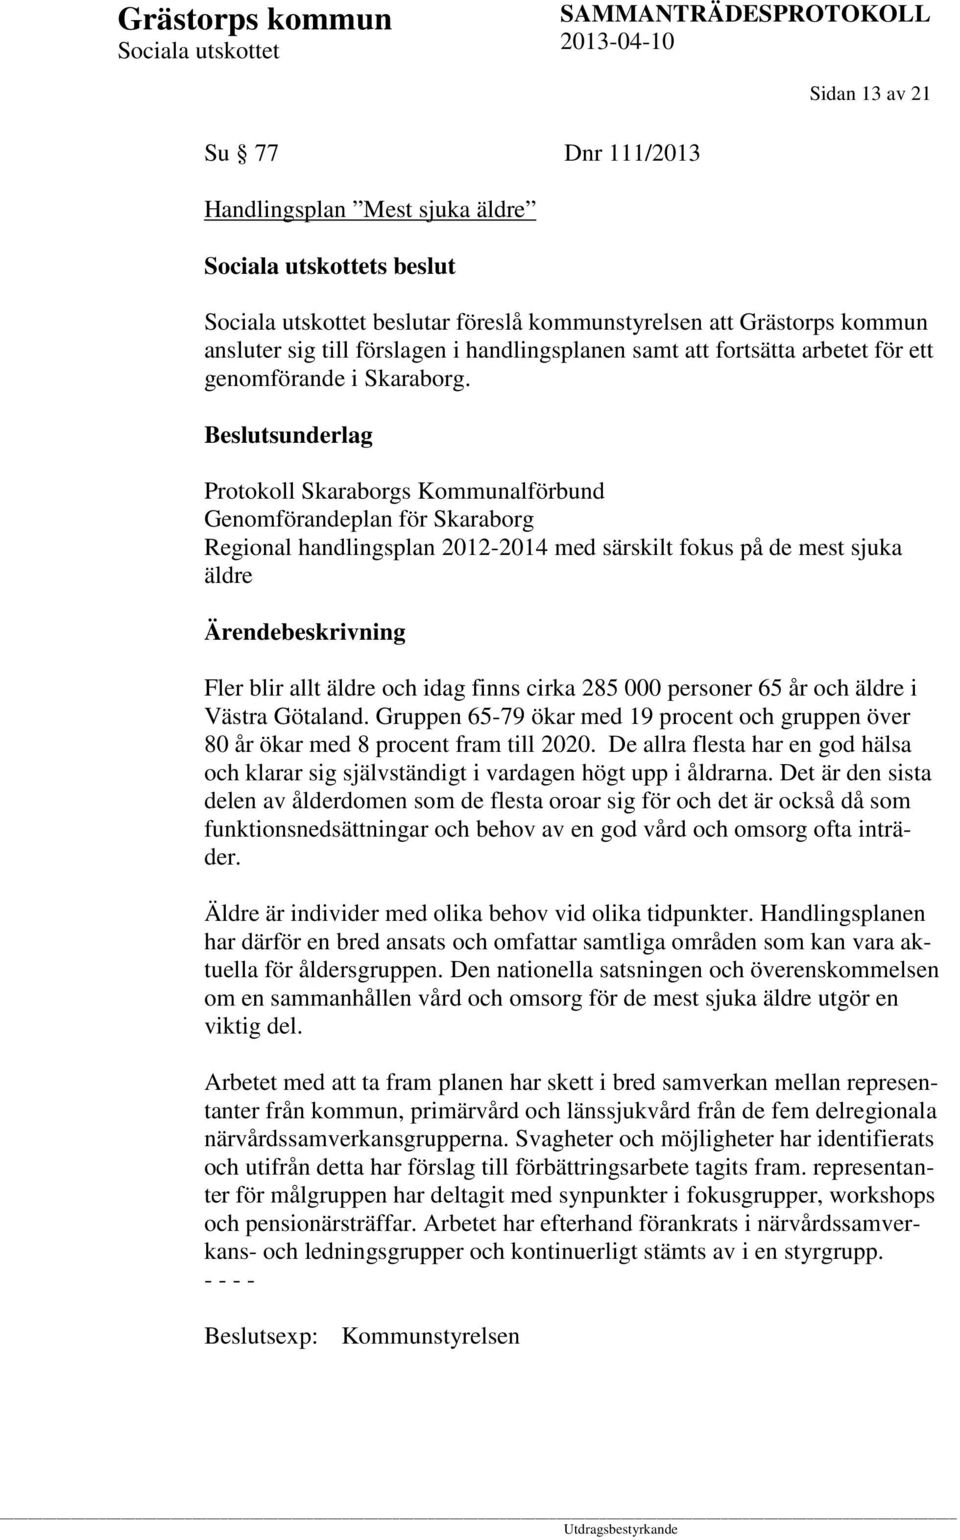 Beslutsunderlag Protokoll Skaraborgs Kommunalförbund Genomförandeplan för Skaraborg Regional handlingsplan 2012-2014 med särskilt fokus på de mest sjuka äldre Fler blir allt äldre och idag finns